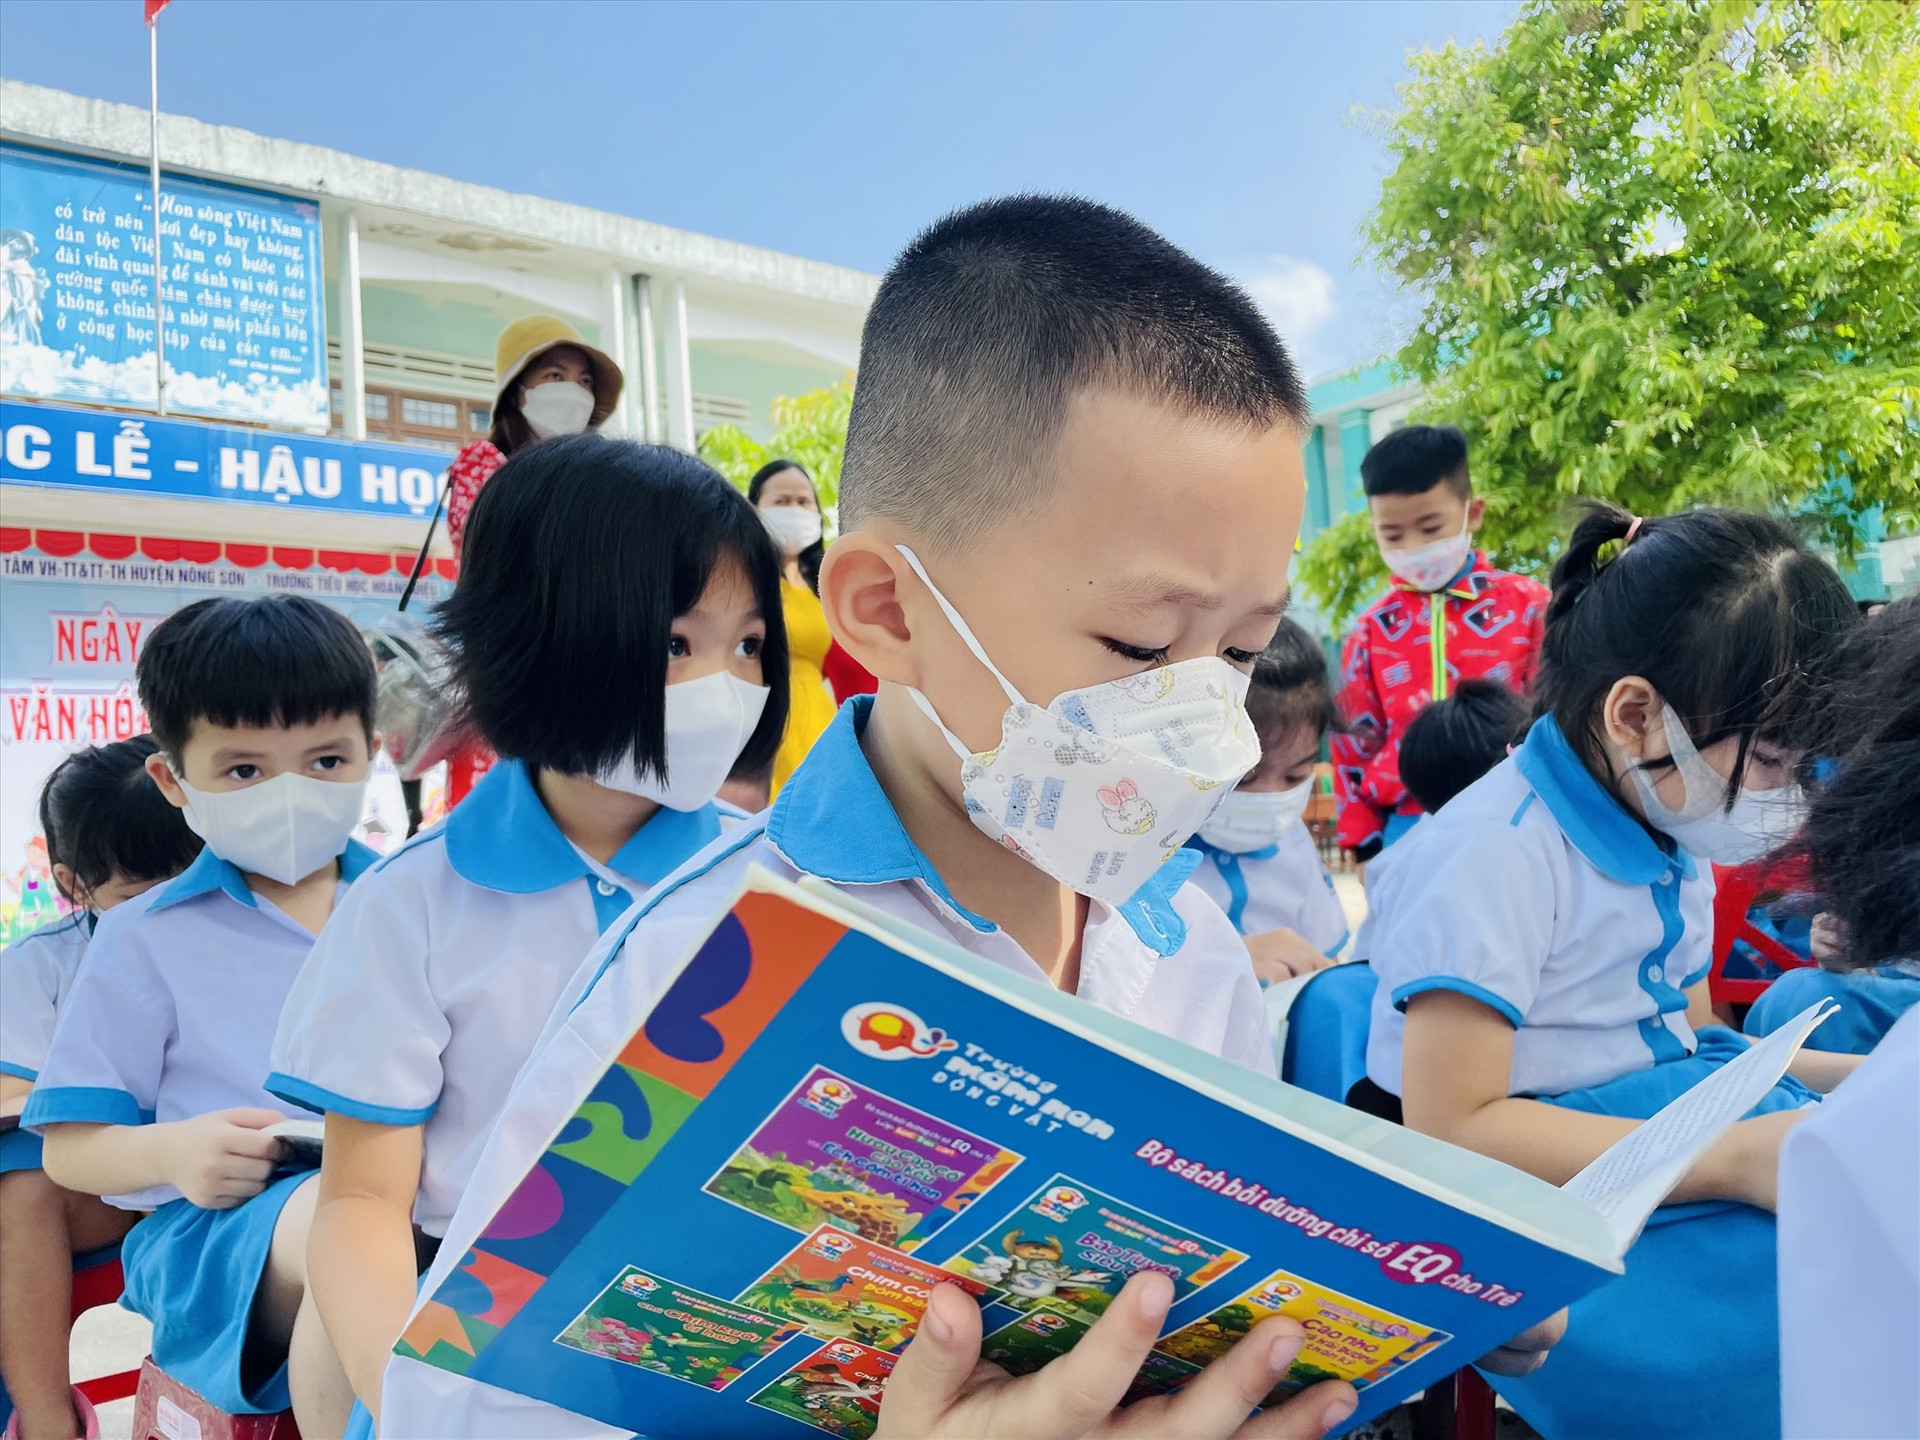 “Ngày hội đọc sách và văn hóa đọc Việt Nam” góp phần hình thành thói quen, nét đẹp văn hóa đọc trong học sinh. Ảnh: TÂM LÊ